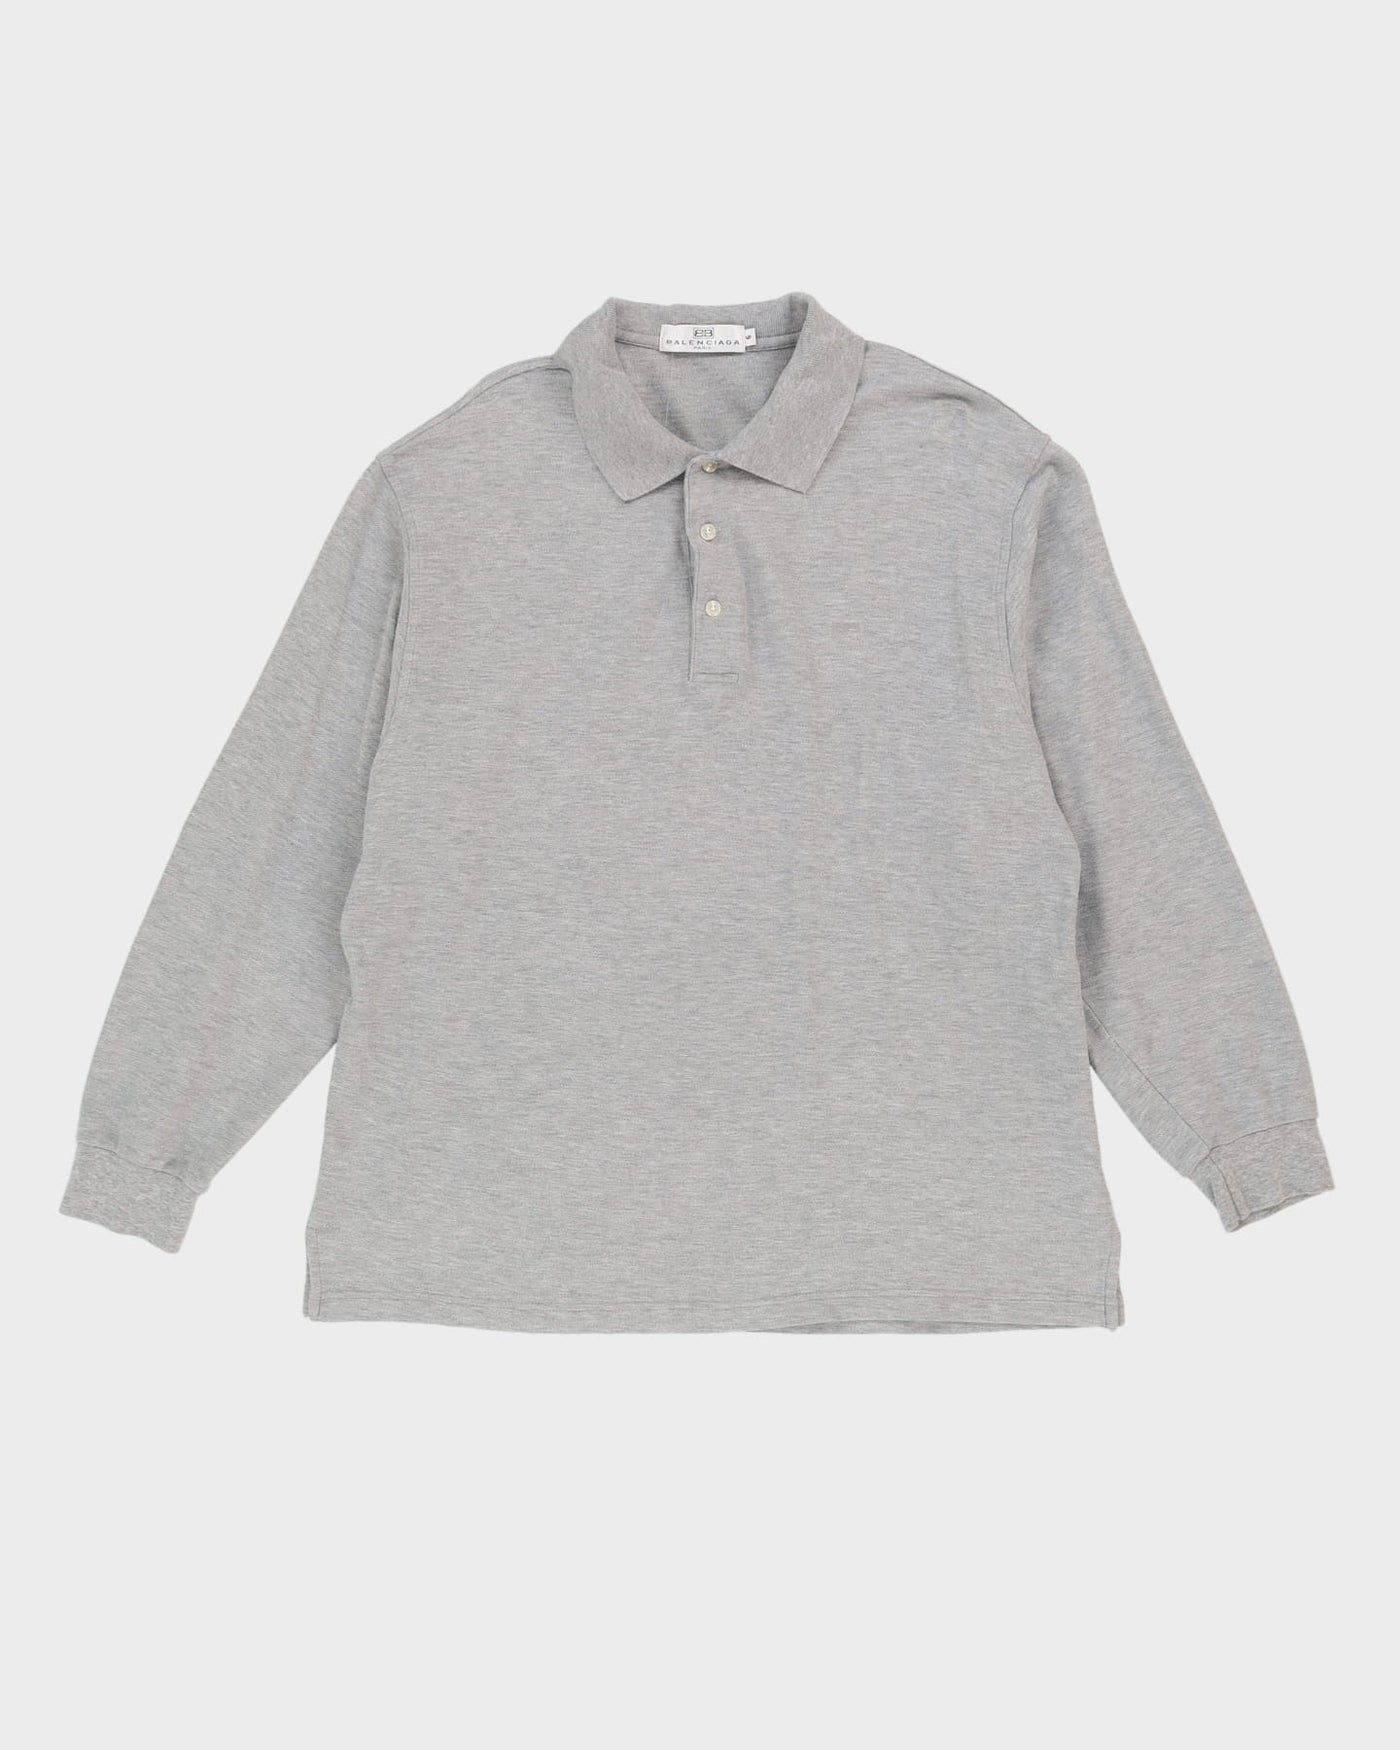 Balenciaga Grey Long Sleeve Polo Shirt - M